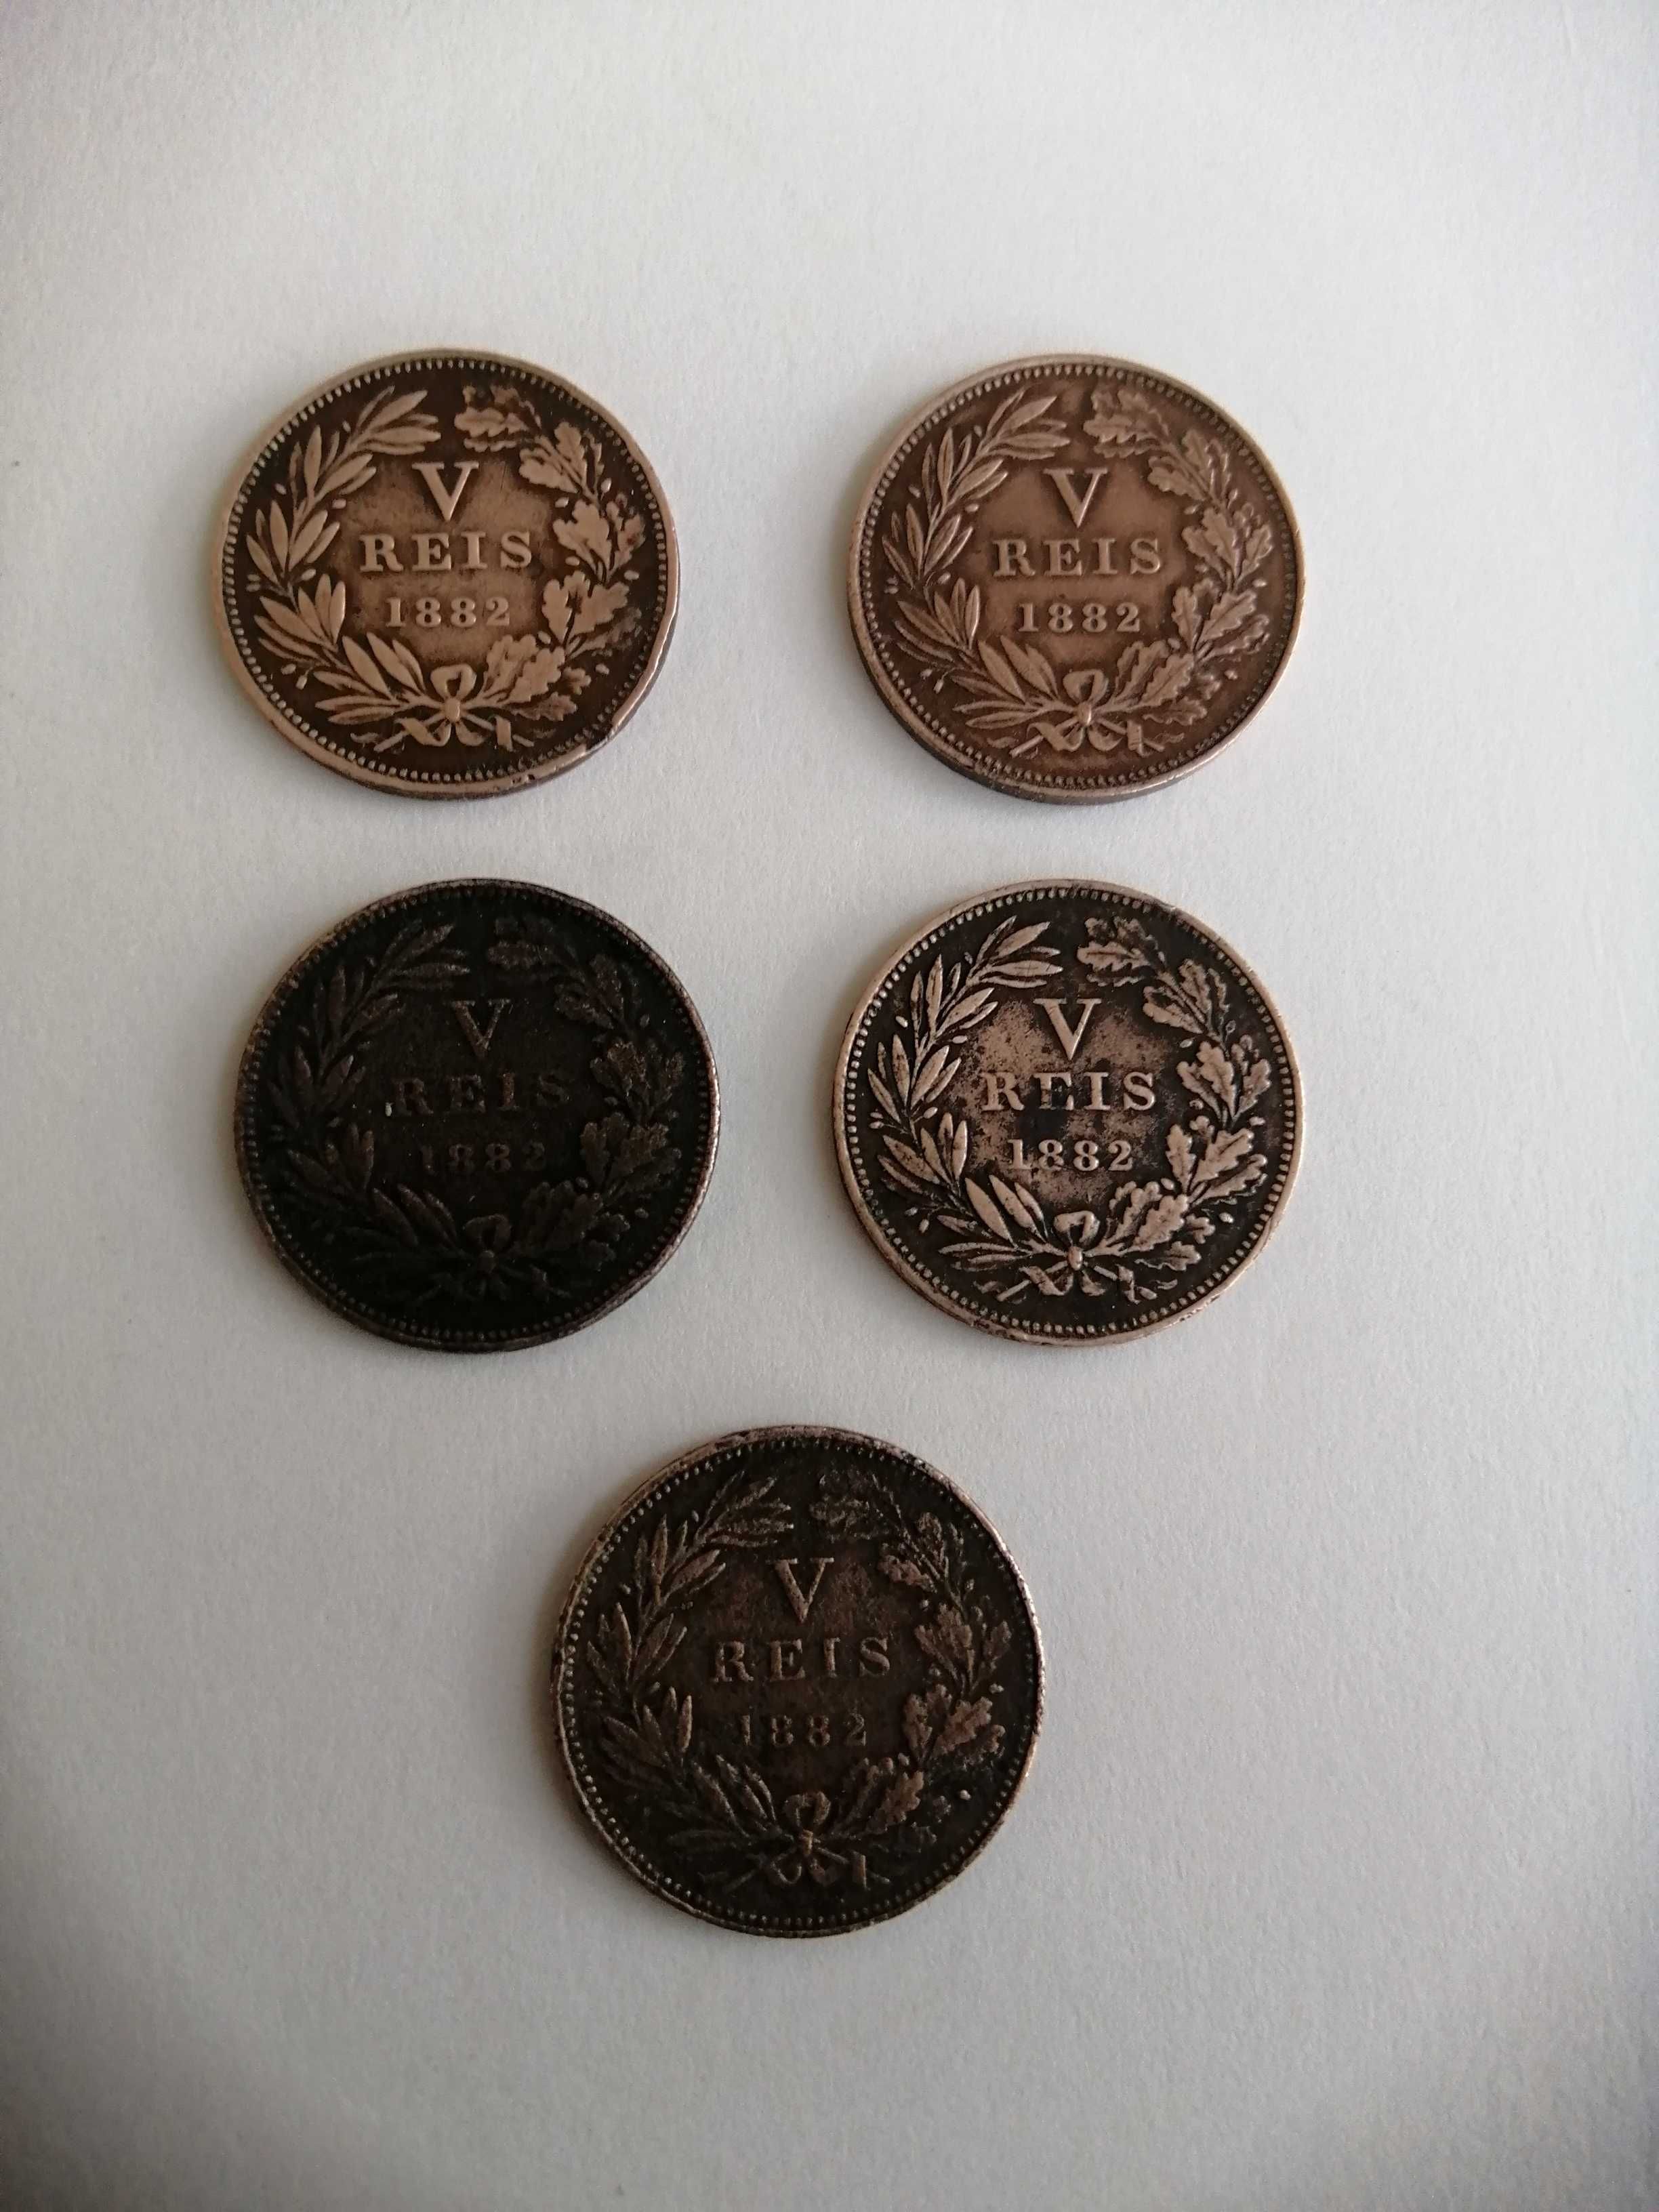 10 moedas de V réis de D. Luís. 1882, 1884, 1885,1886.